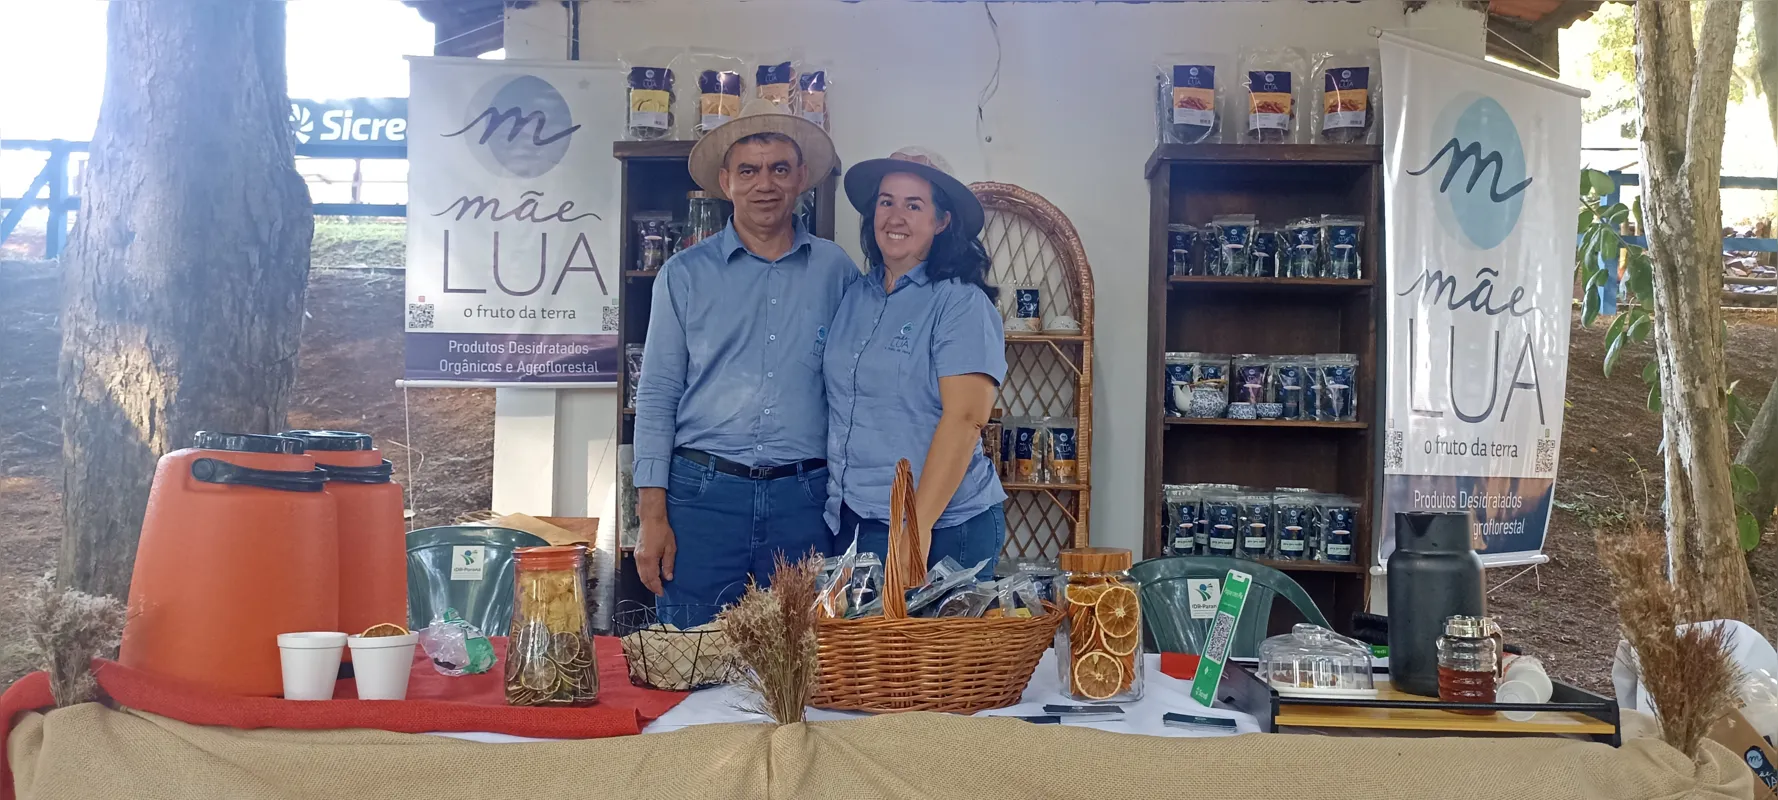 Jaci e o marido Carlos Oliveira, da Mãe Lua: frutas desidratadas para venda e degustação